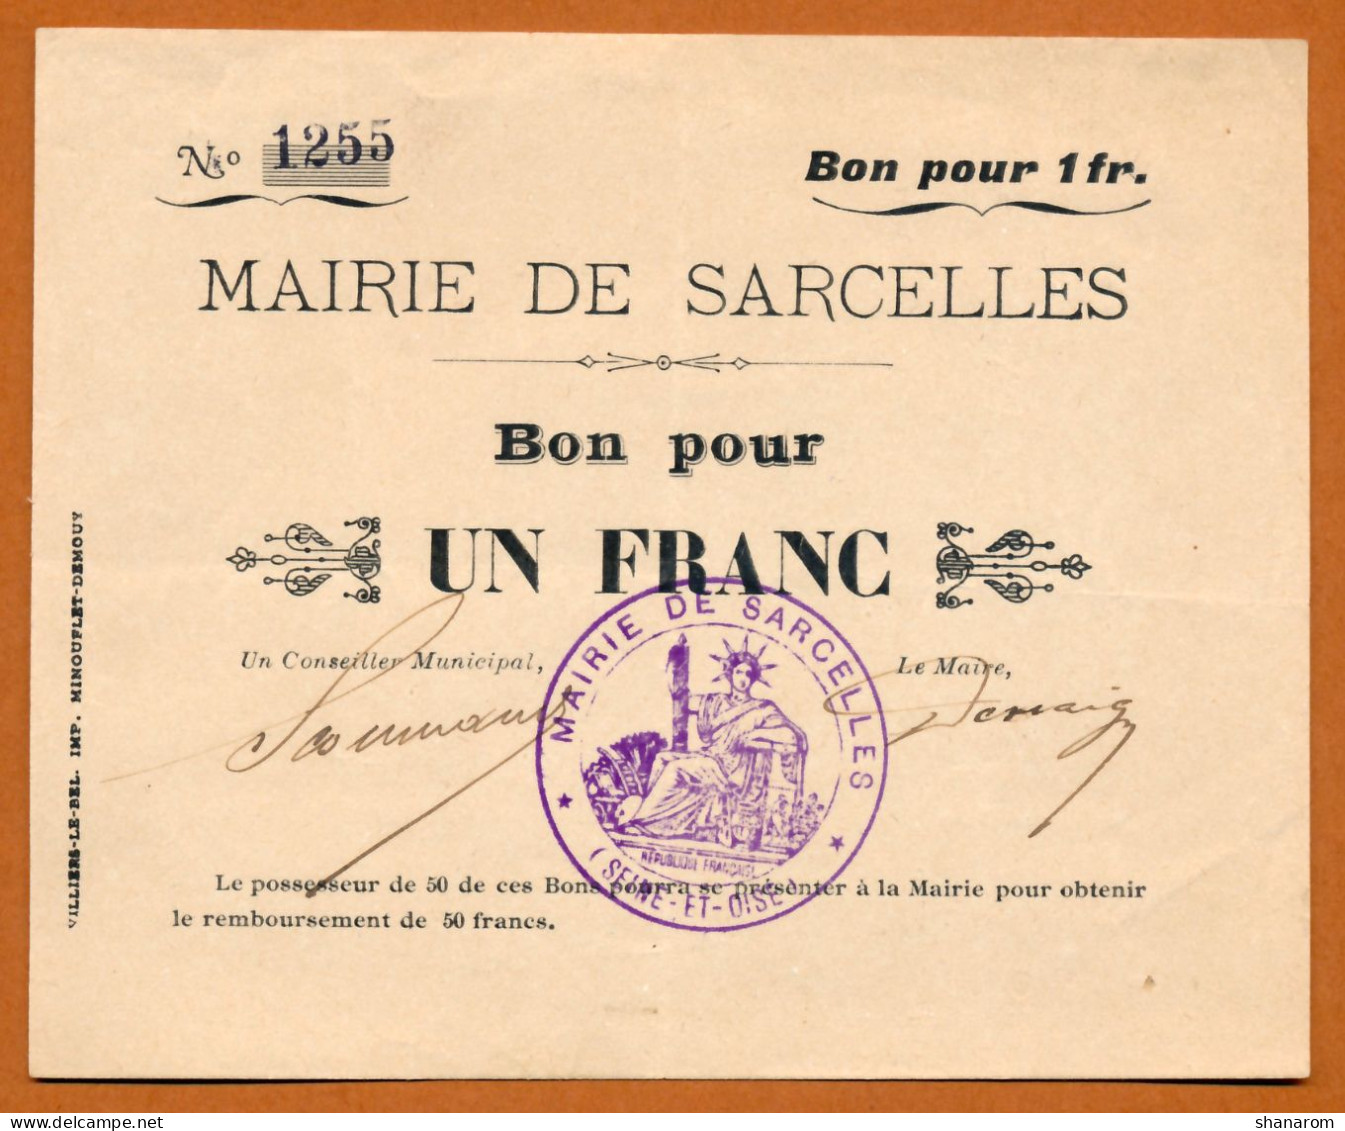 1914-1918 // VILLE DE SARCELLES (Val D'Oise 95) // MAIRIE // Bon Pour Un Franc - Bonds & Basic Needs